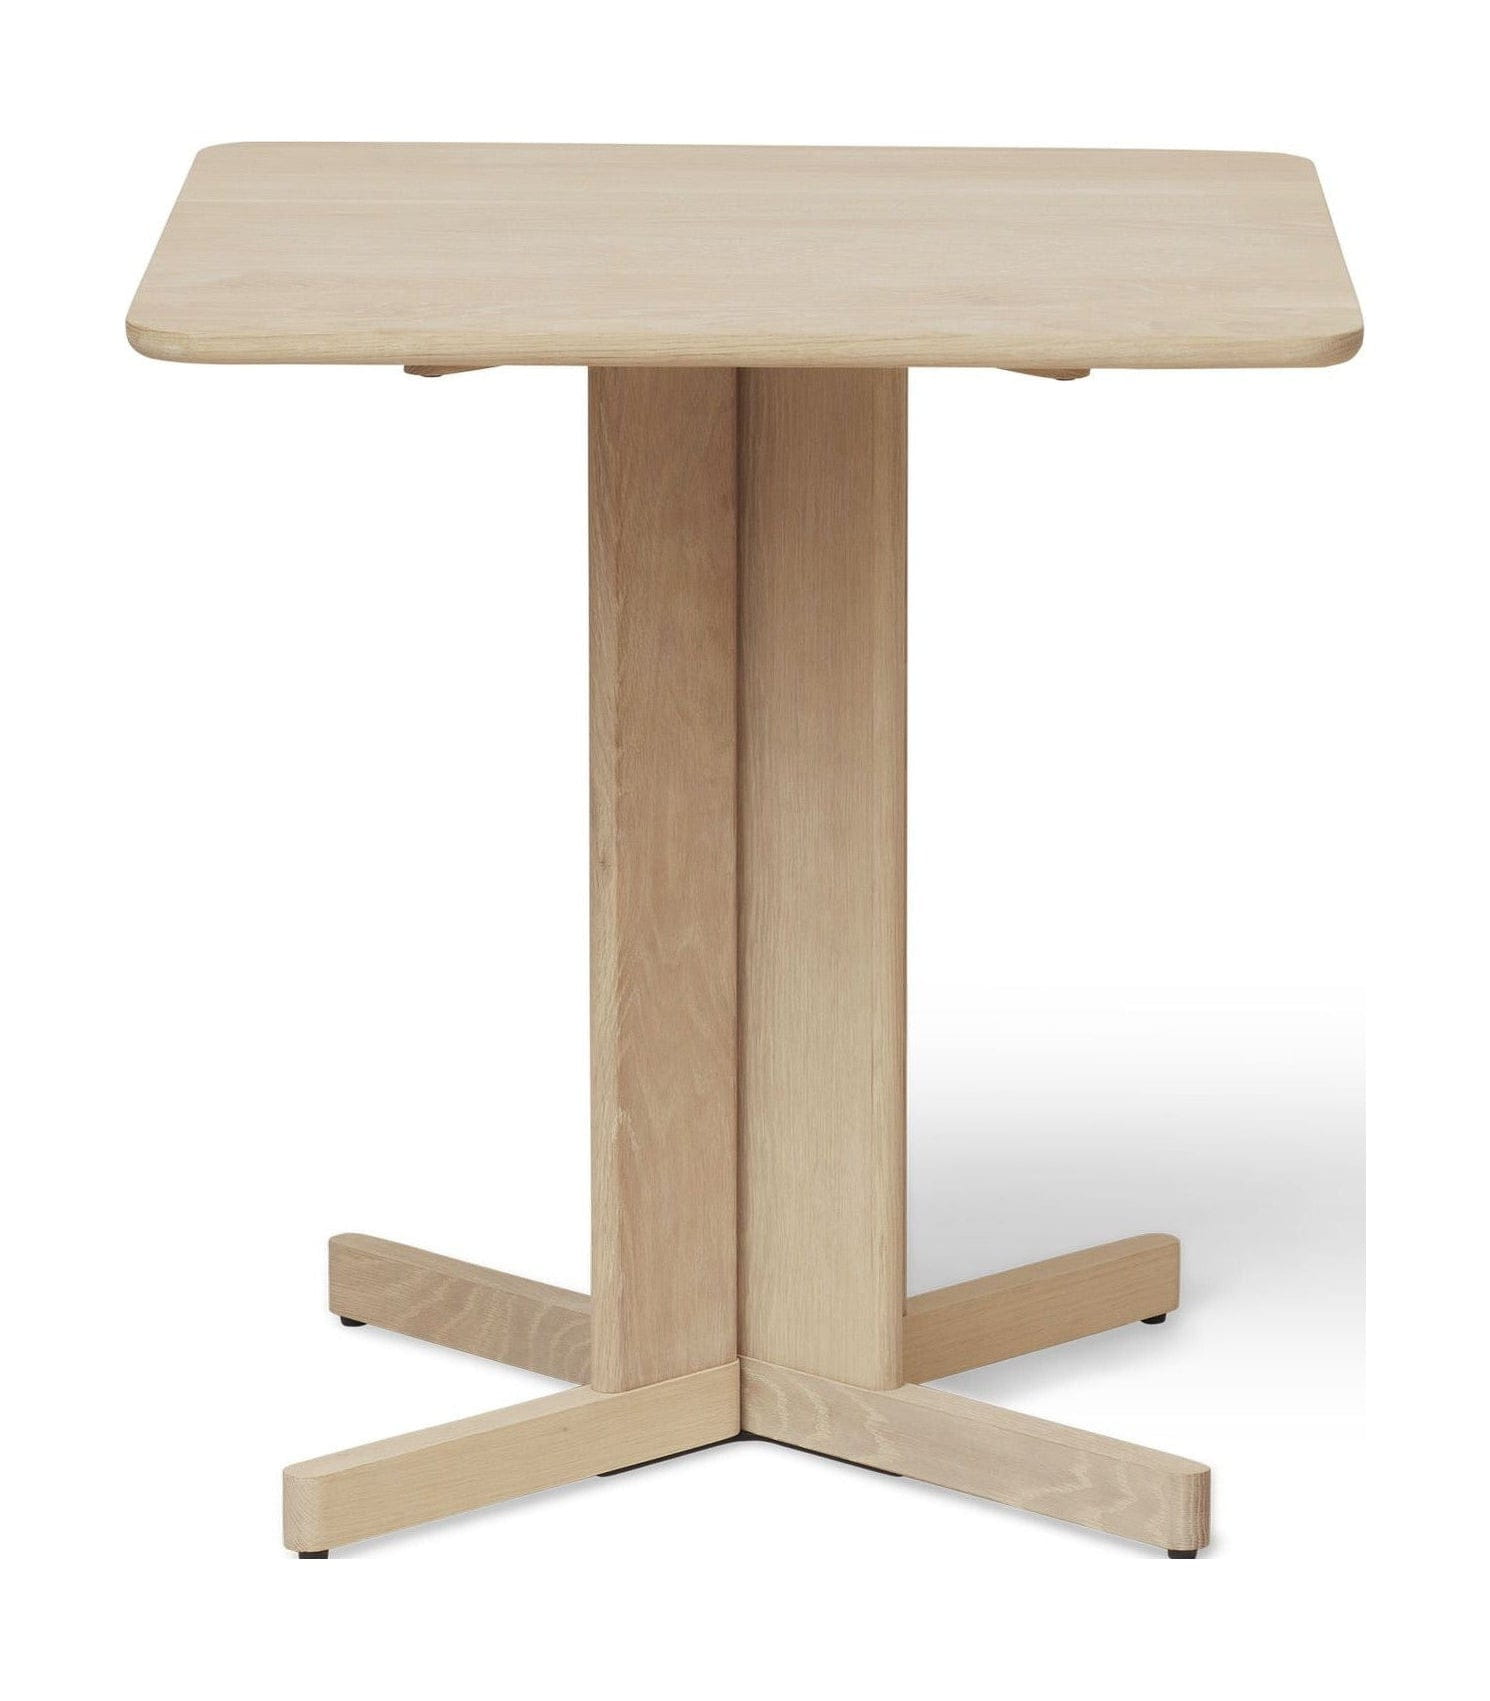 Form & Refine Quatrefoil Table 68x68 Cm. White Oak